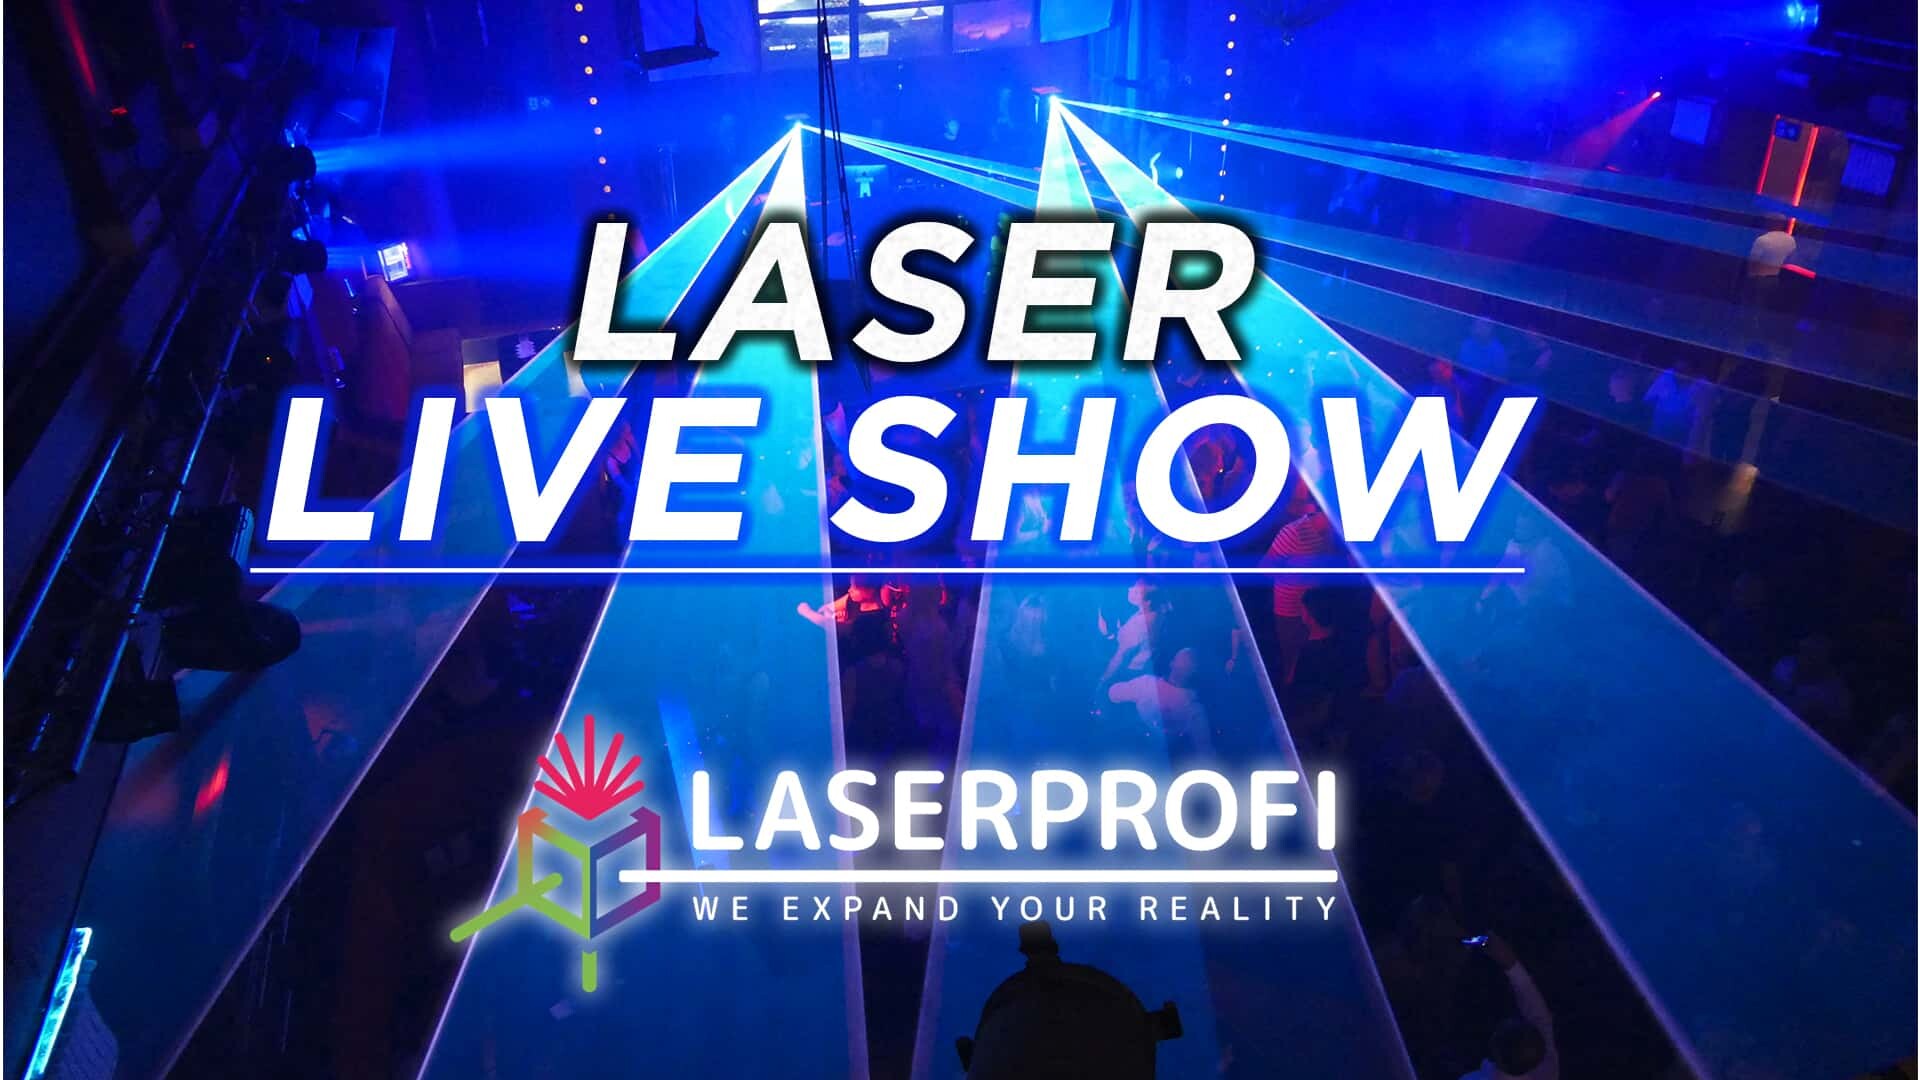 Pokaz laserów (krótka relacja) na żywo w klubie dyskotekowym [LASERPROFI]